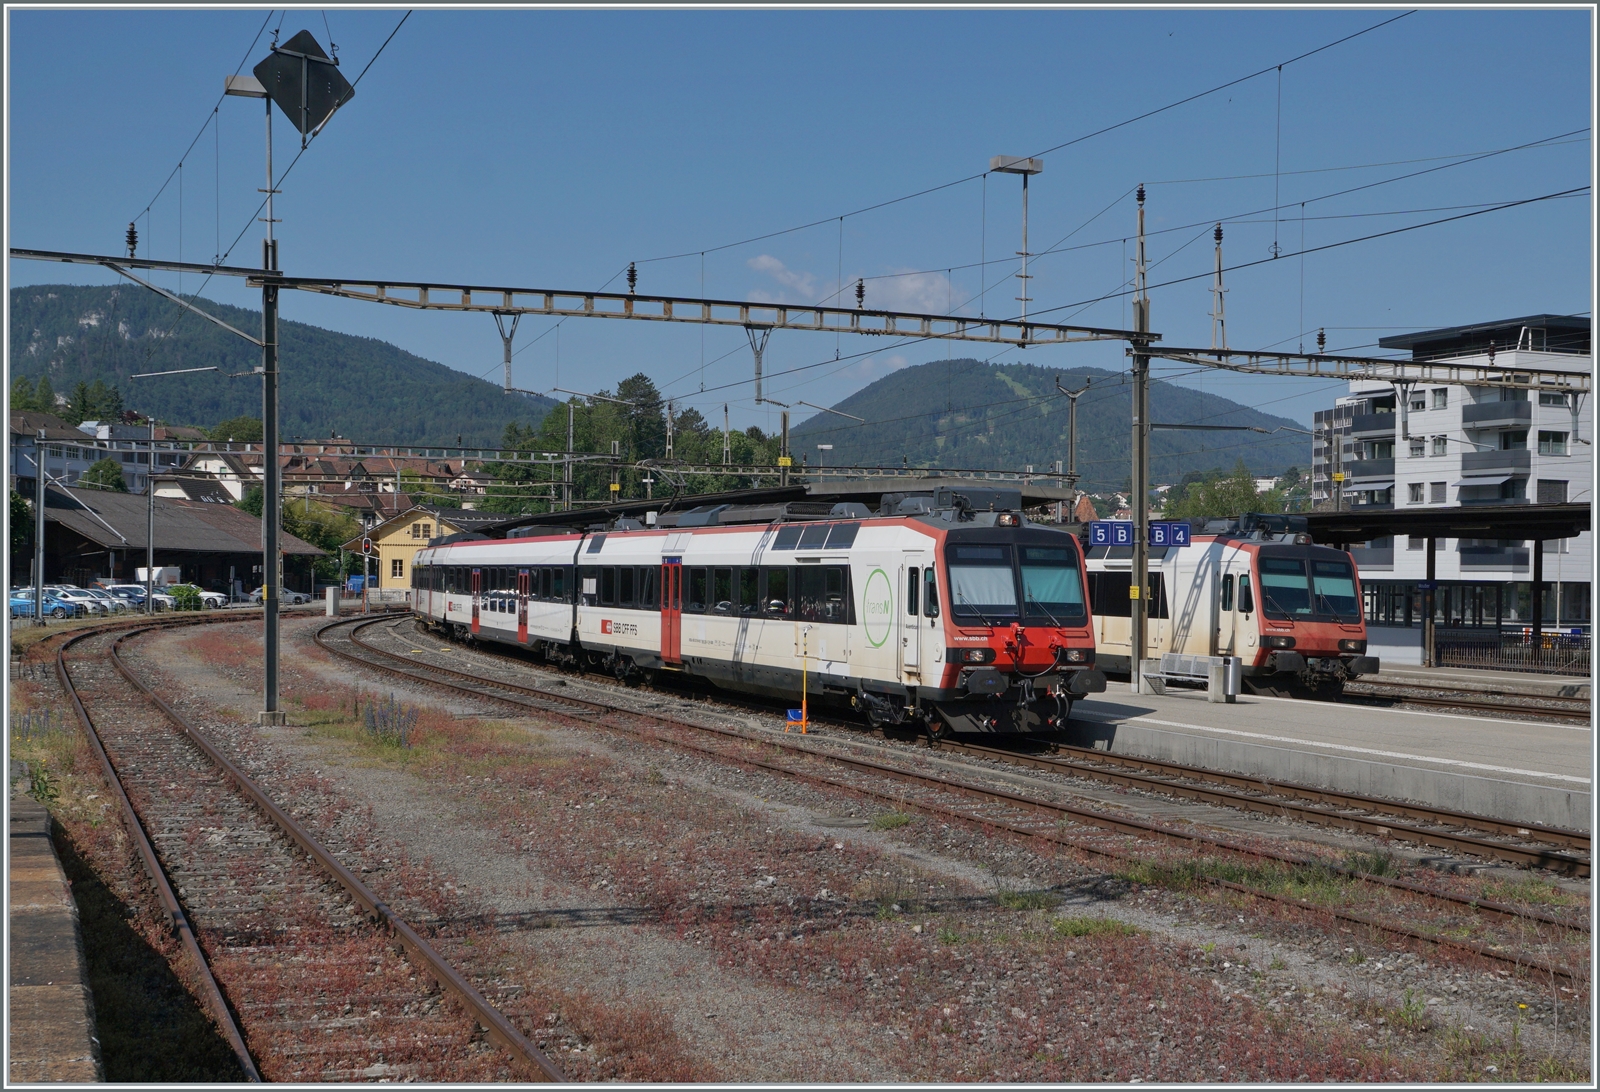 In Moutier wartet ein SBB RBDe 560 Domino mit TransN Anschriften auf die Abfahrt nach Solothurn. Der im Hintergrnd zu sehende weiter SBB Domino ist von Biel/Bienne (via Sonceboz) in Moutier angekommen.

5. Juni 2023